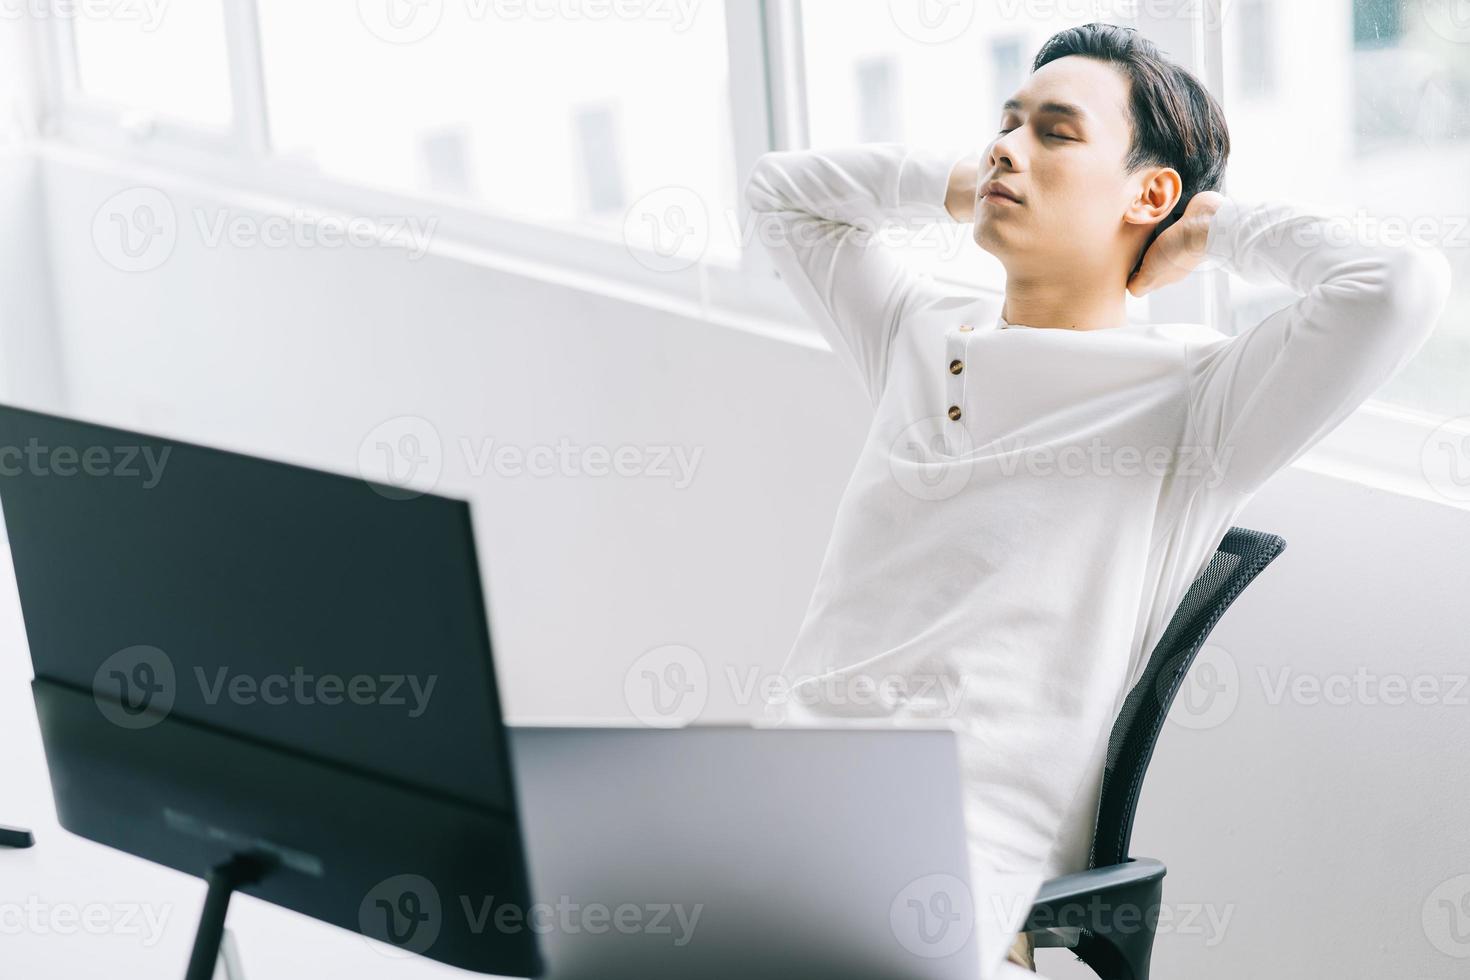 Programador asiático se sienta con la cabeza hacia atrás en su silla para relajarse después de un agotador tiempo de trabajo foto